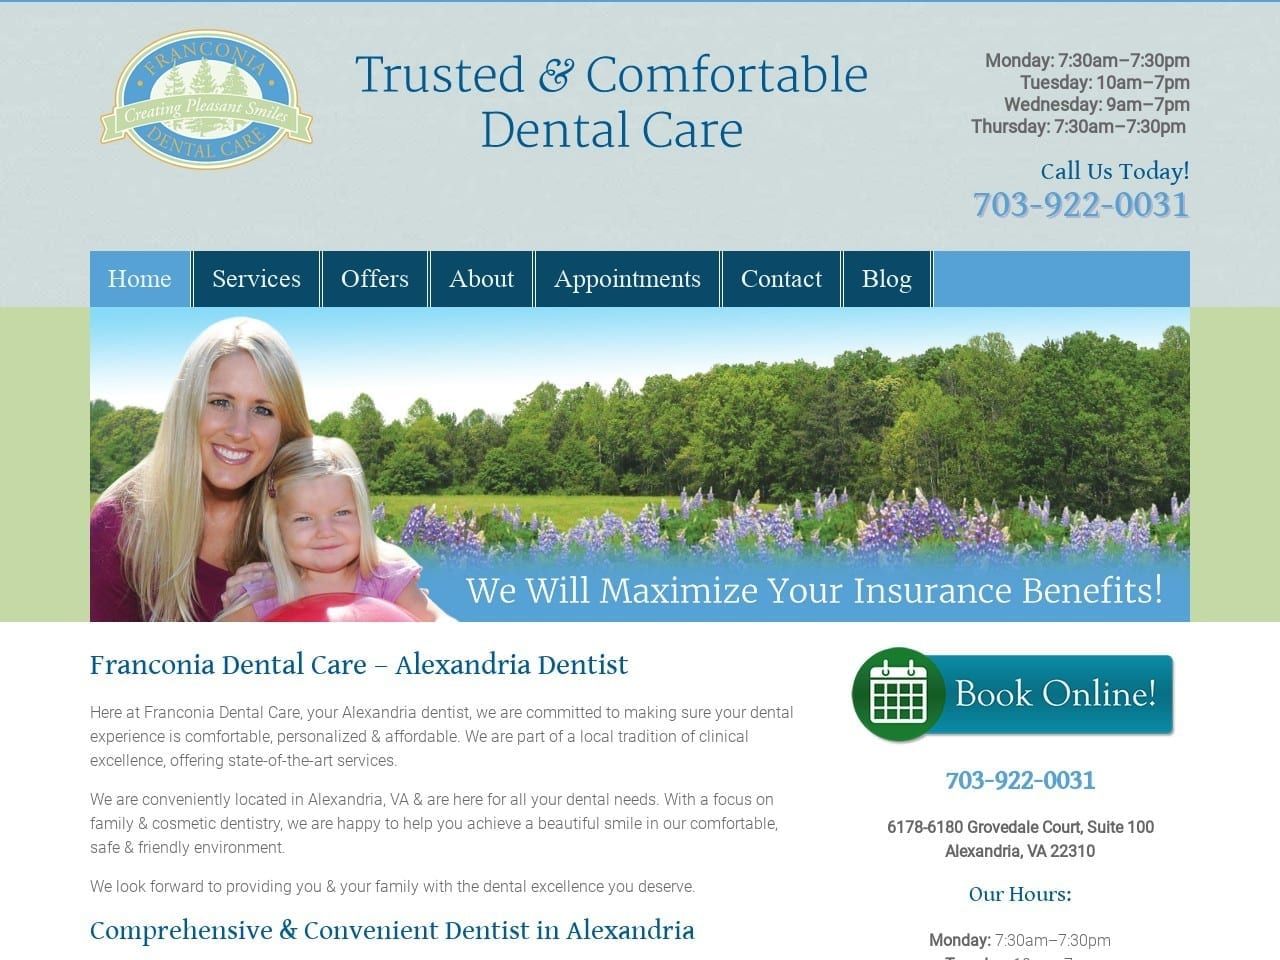 Franconia Dental Care Website Screenshot from franconiadentalcare.com